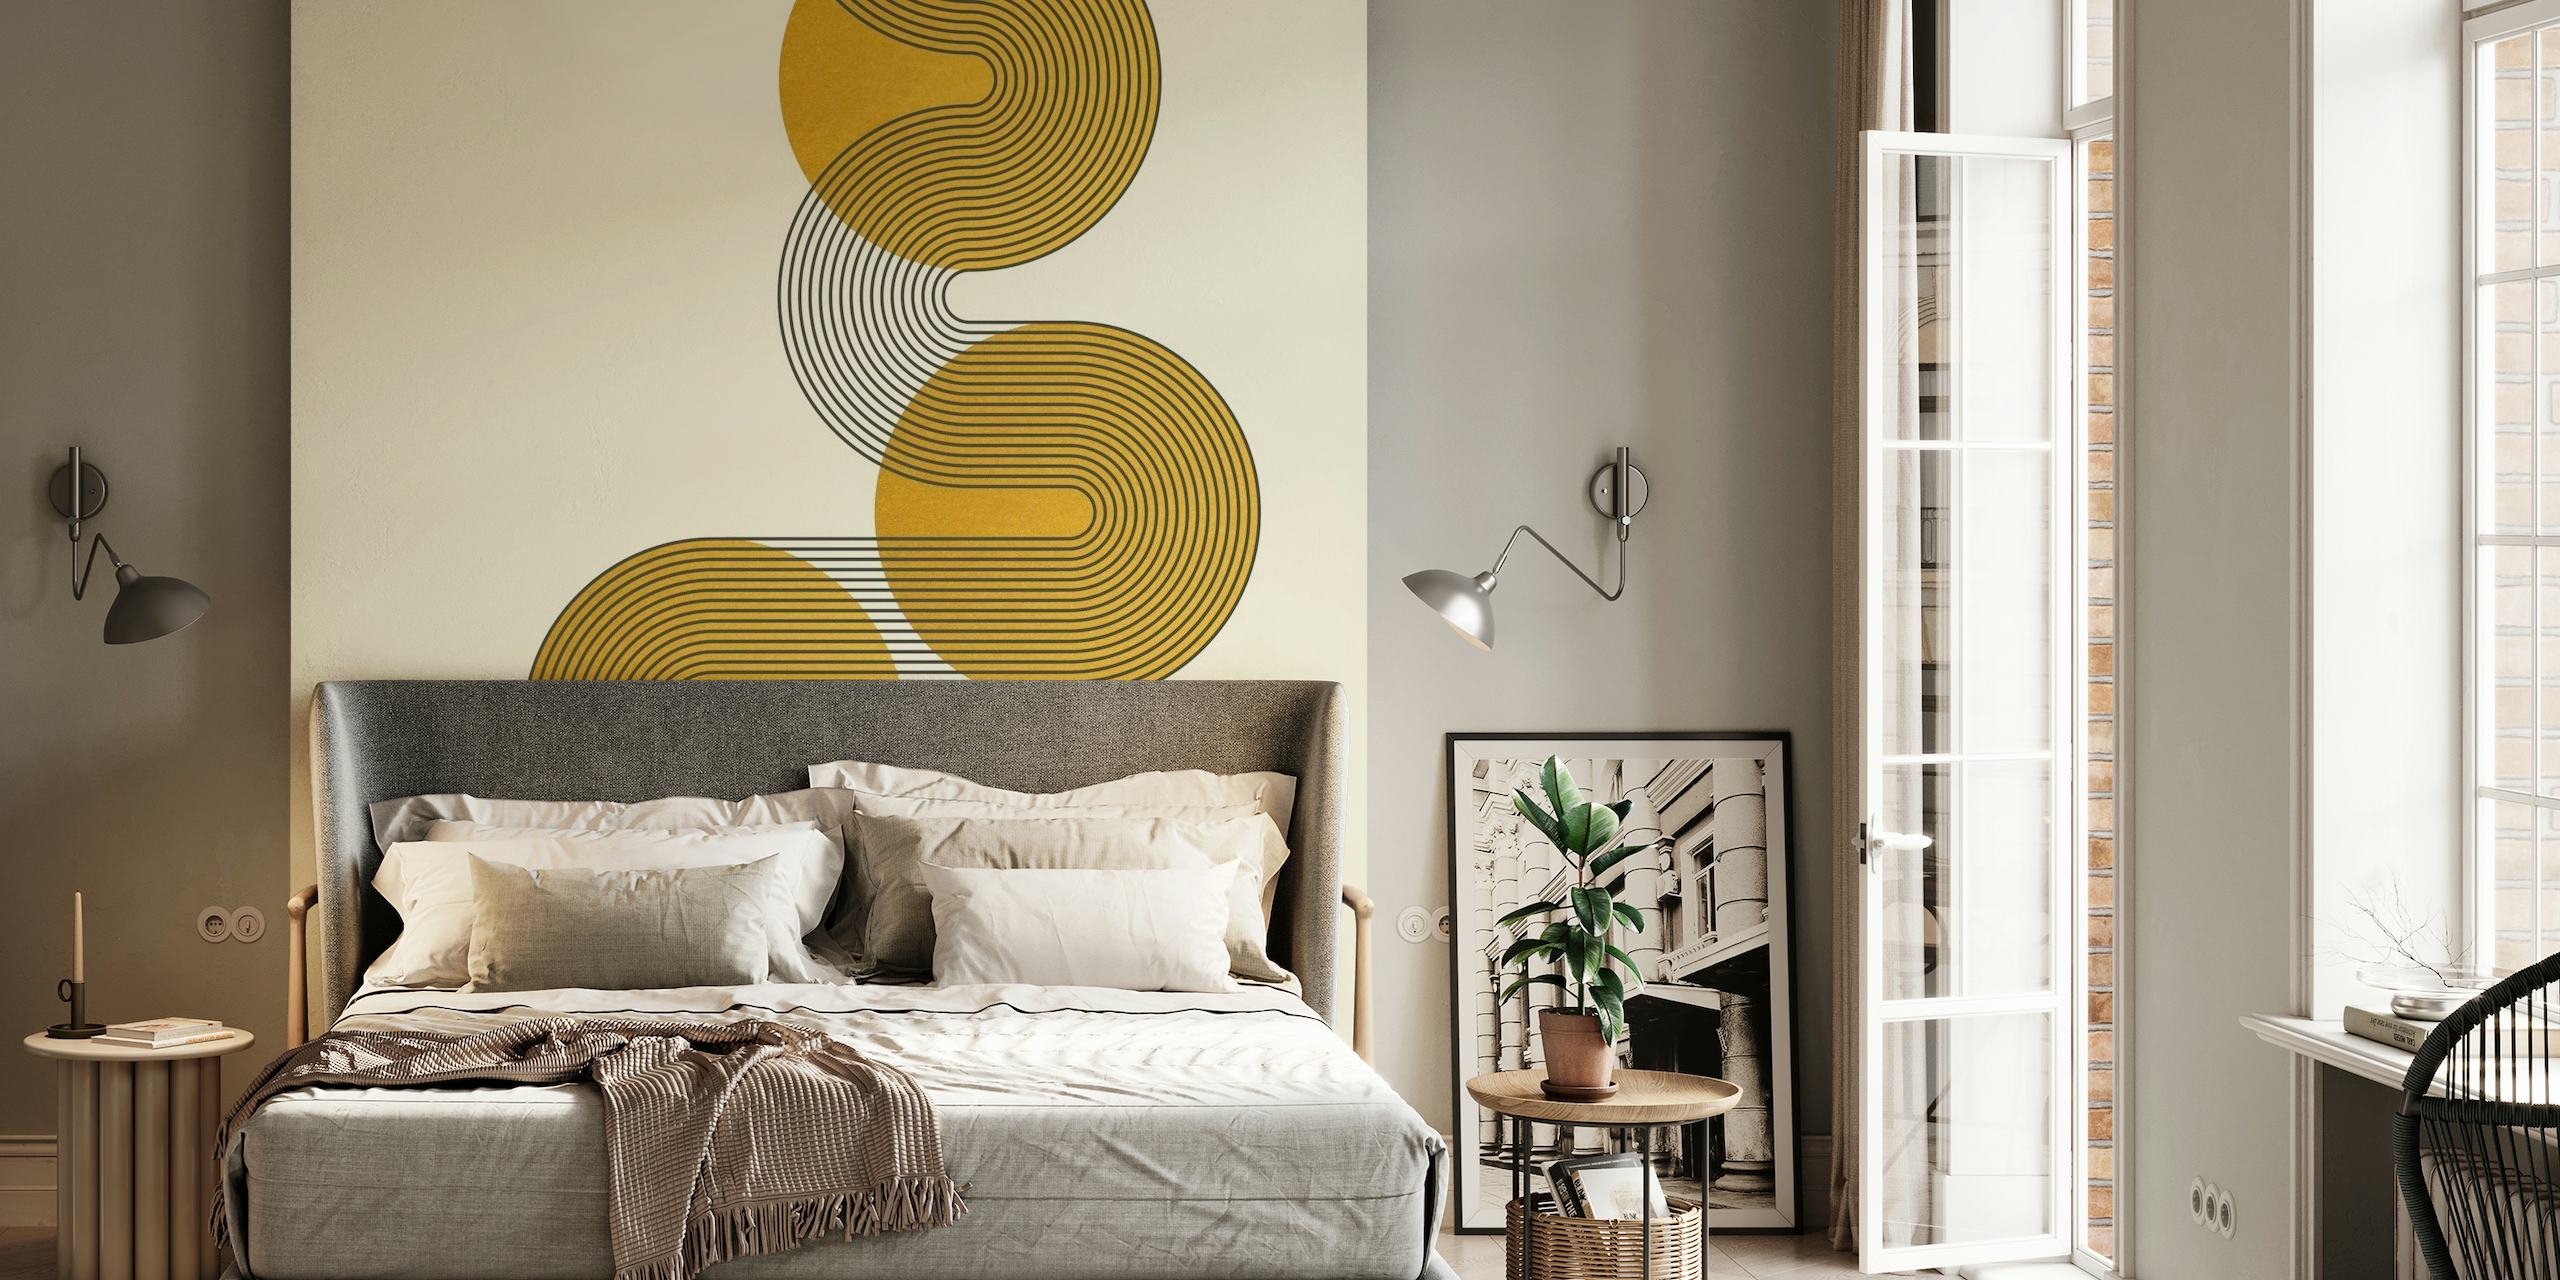 Murale abstraite courbée inspirée du Bauhaus dans les tons du lever du soleil